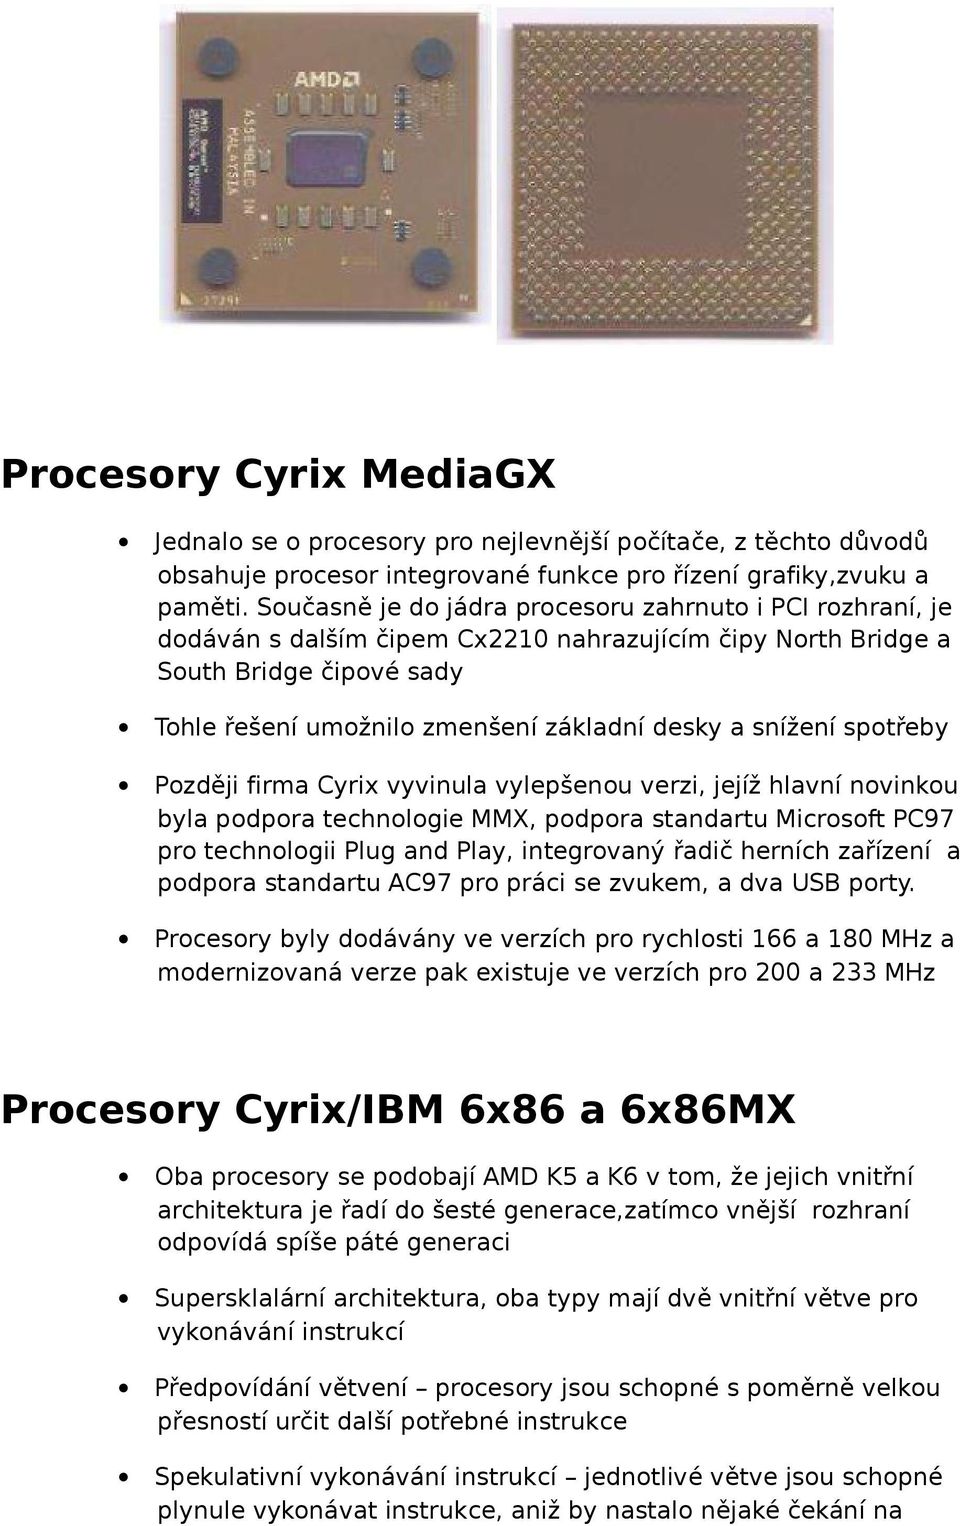 snížení spotřeby Později firma Cyrix vyvinula vylepšenou verzi, jejíž hlavní novinkou byla podpora technologie MMX, podpora standartu Microsoft PC97 pro technologii Plug and Play, integrovaný řadič